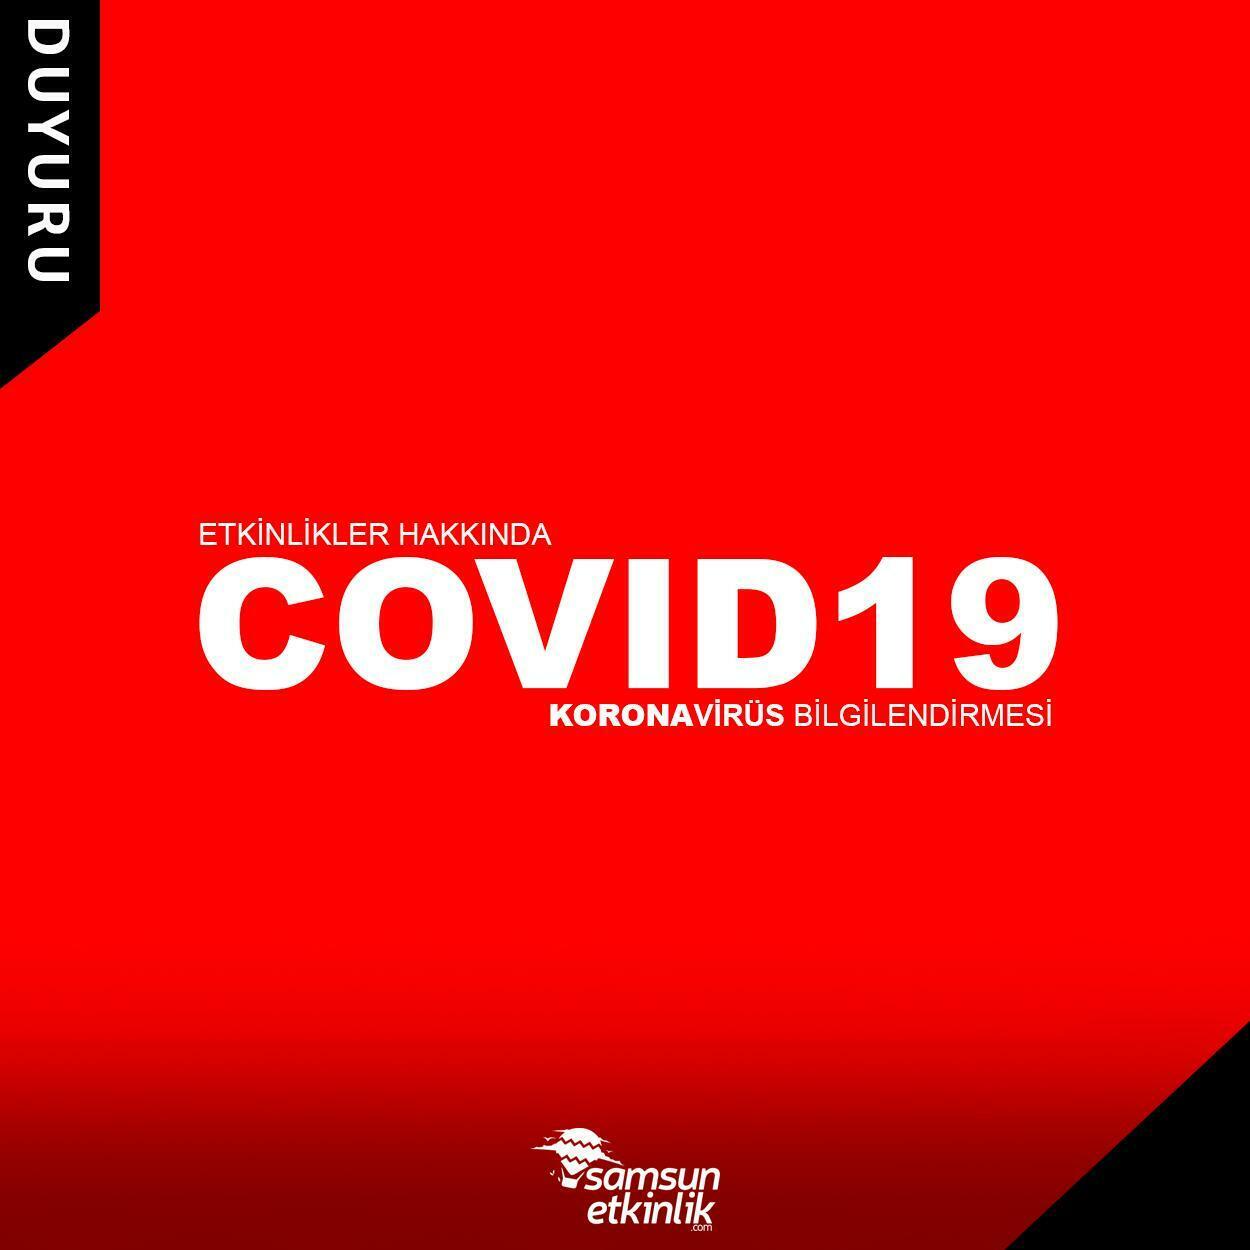 Etkinlikler Hakkında COVID19/Koronavirüs Bilgilendirmesi